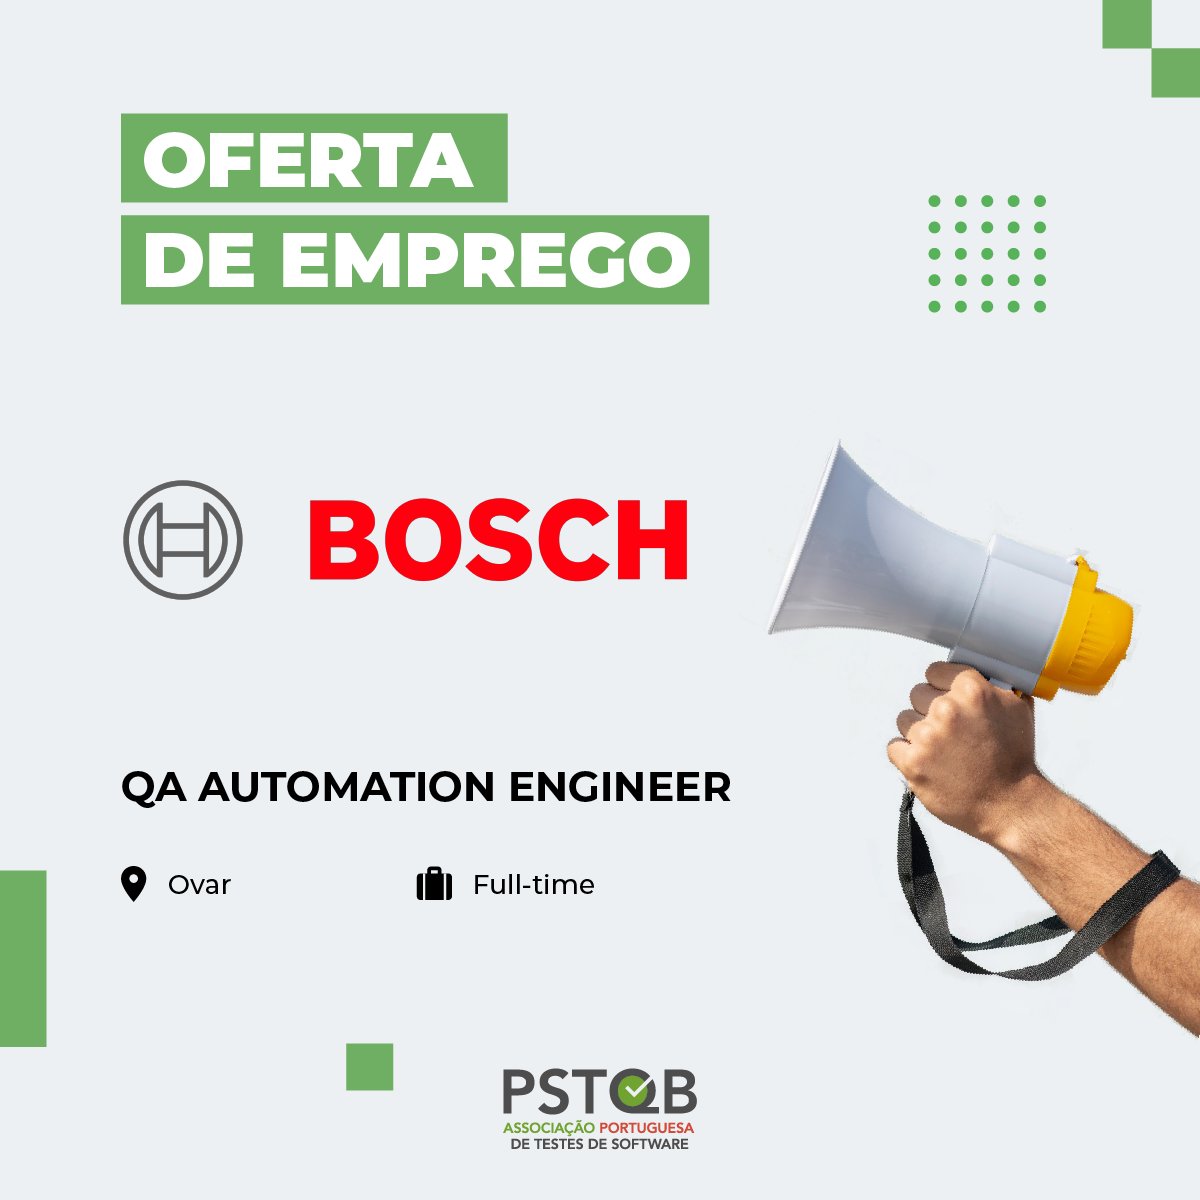 📣 A nossa Associada 𝗕𝗼𝘀𝗰𝗵 𝗣𝗼𝗿𝘁𝘂𝗴𝗮𝗹 está a recrutar!⁠

Saiba mais em:
▶️ bit.ly/EmpregoPSTQB

⁠
#PSTQB #Bosch #Recrutamento #AutomationEngineer